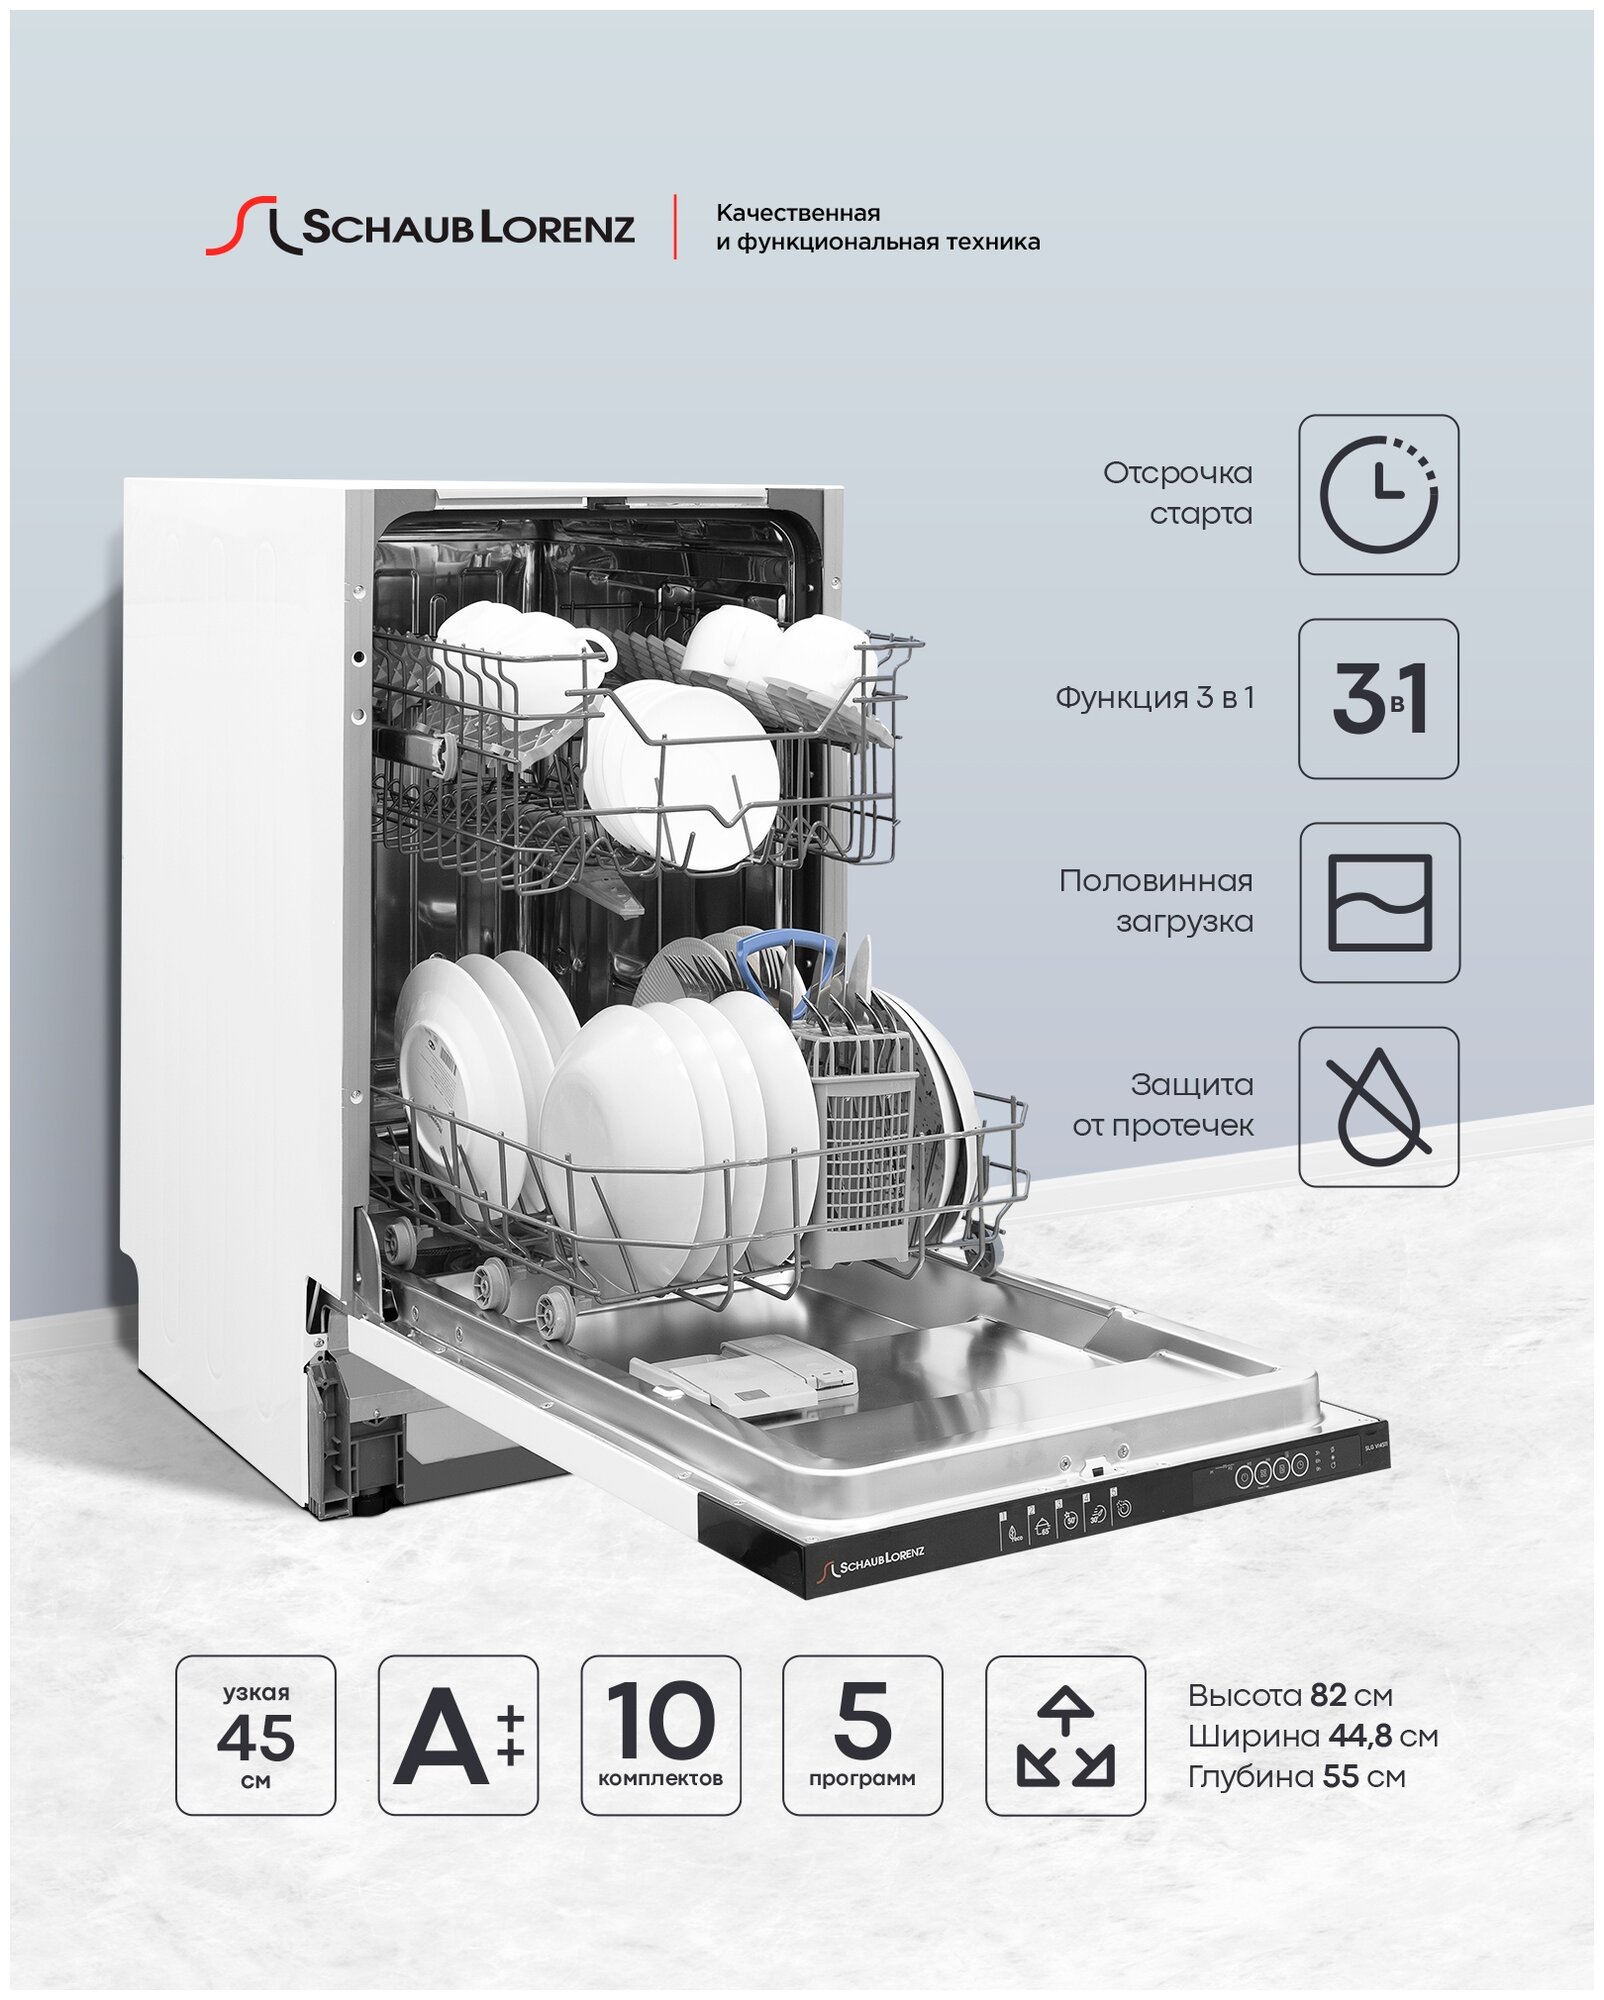 Посудомоечная машина встраиваемая Schaub Lorenz SLG VI4511, 45 см, 10 комплектов, 5 программ.